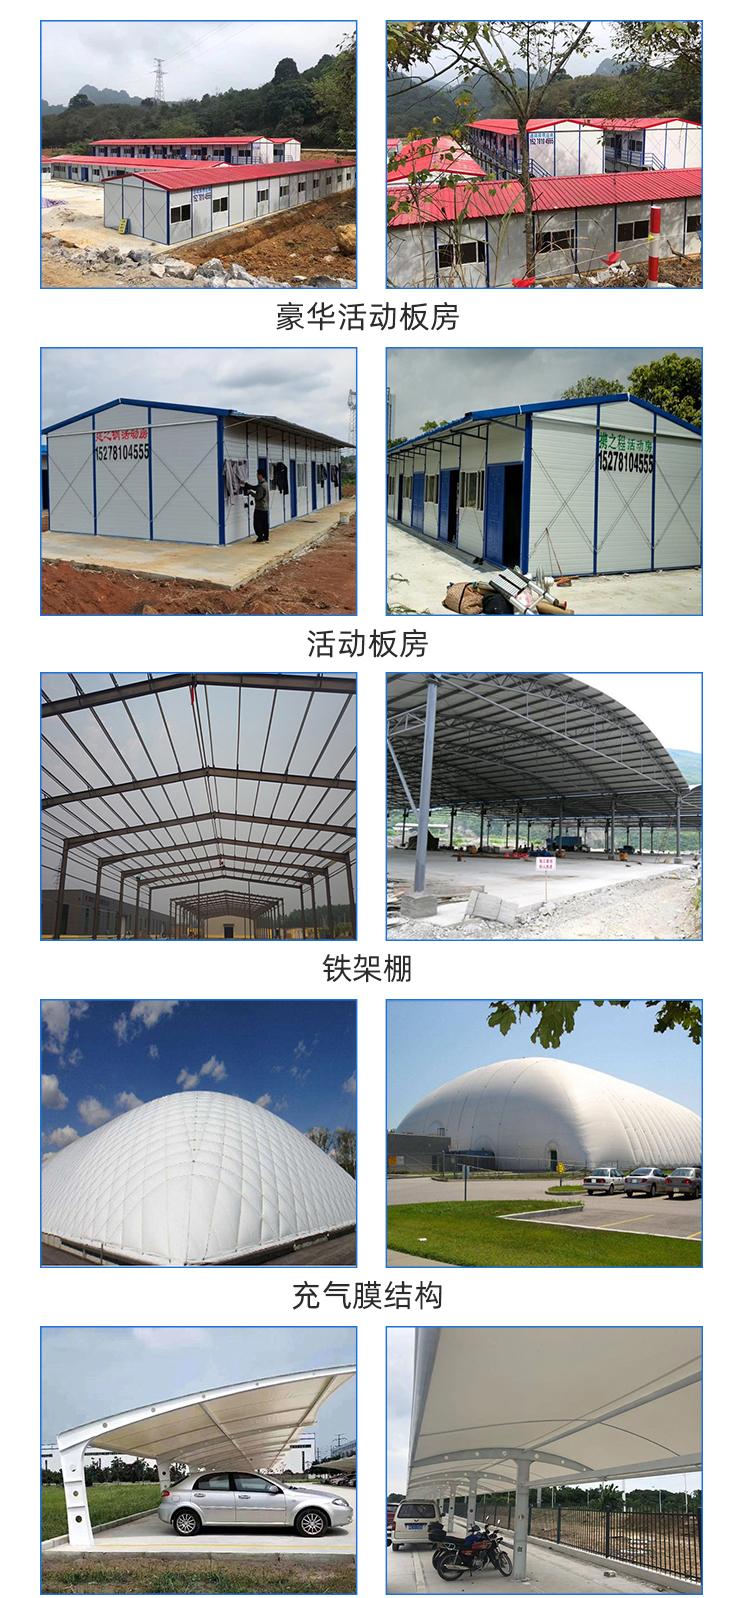 1116广西建之钢钢结构工程有限公司(1)_02.jpg